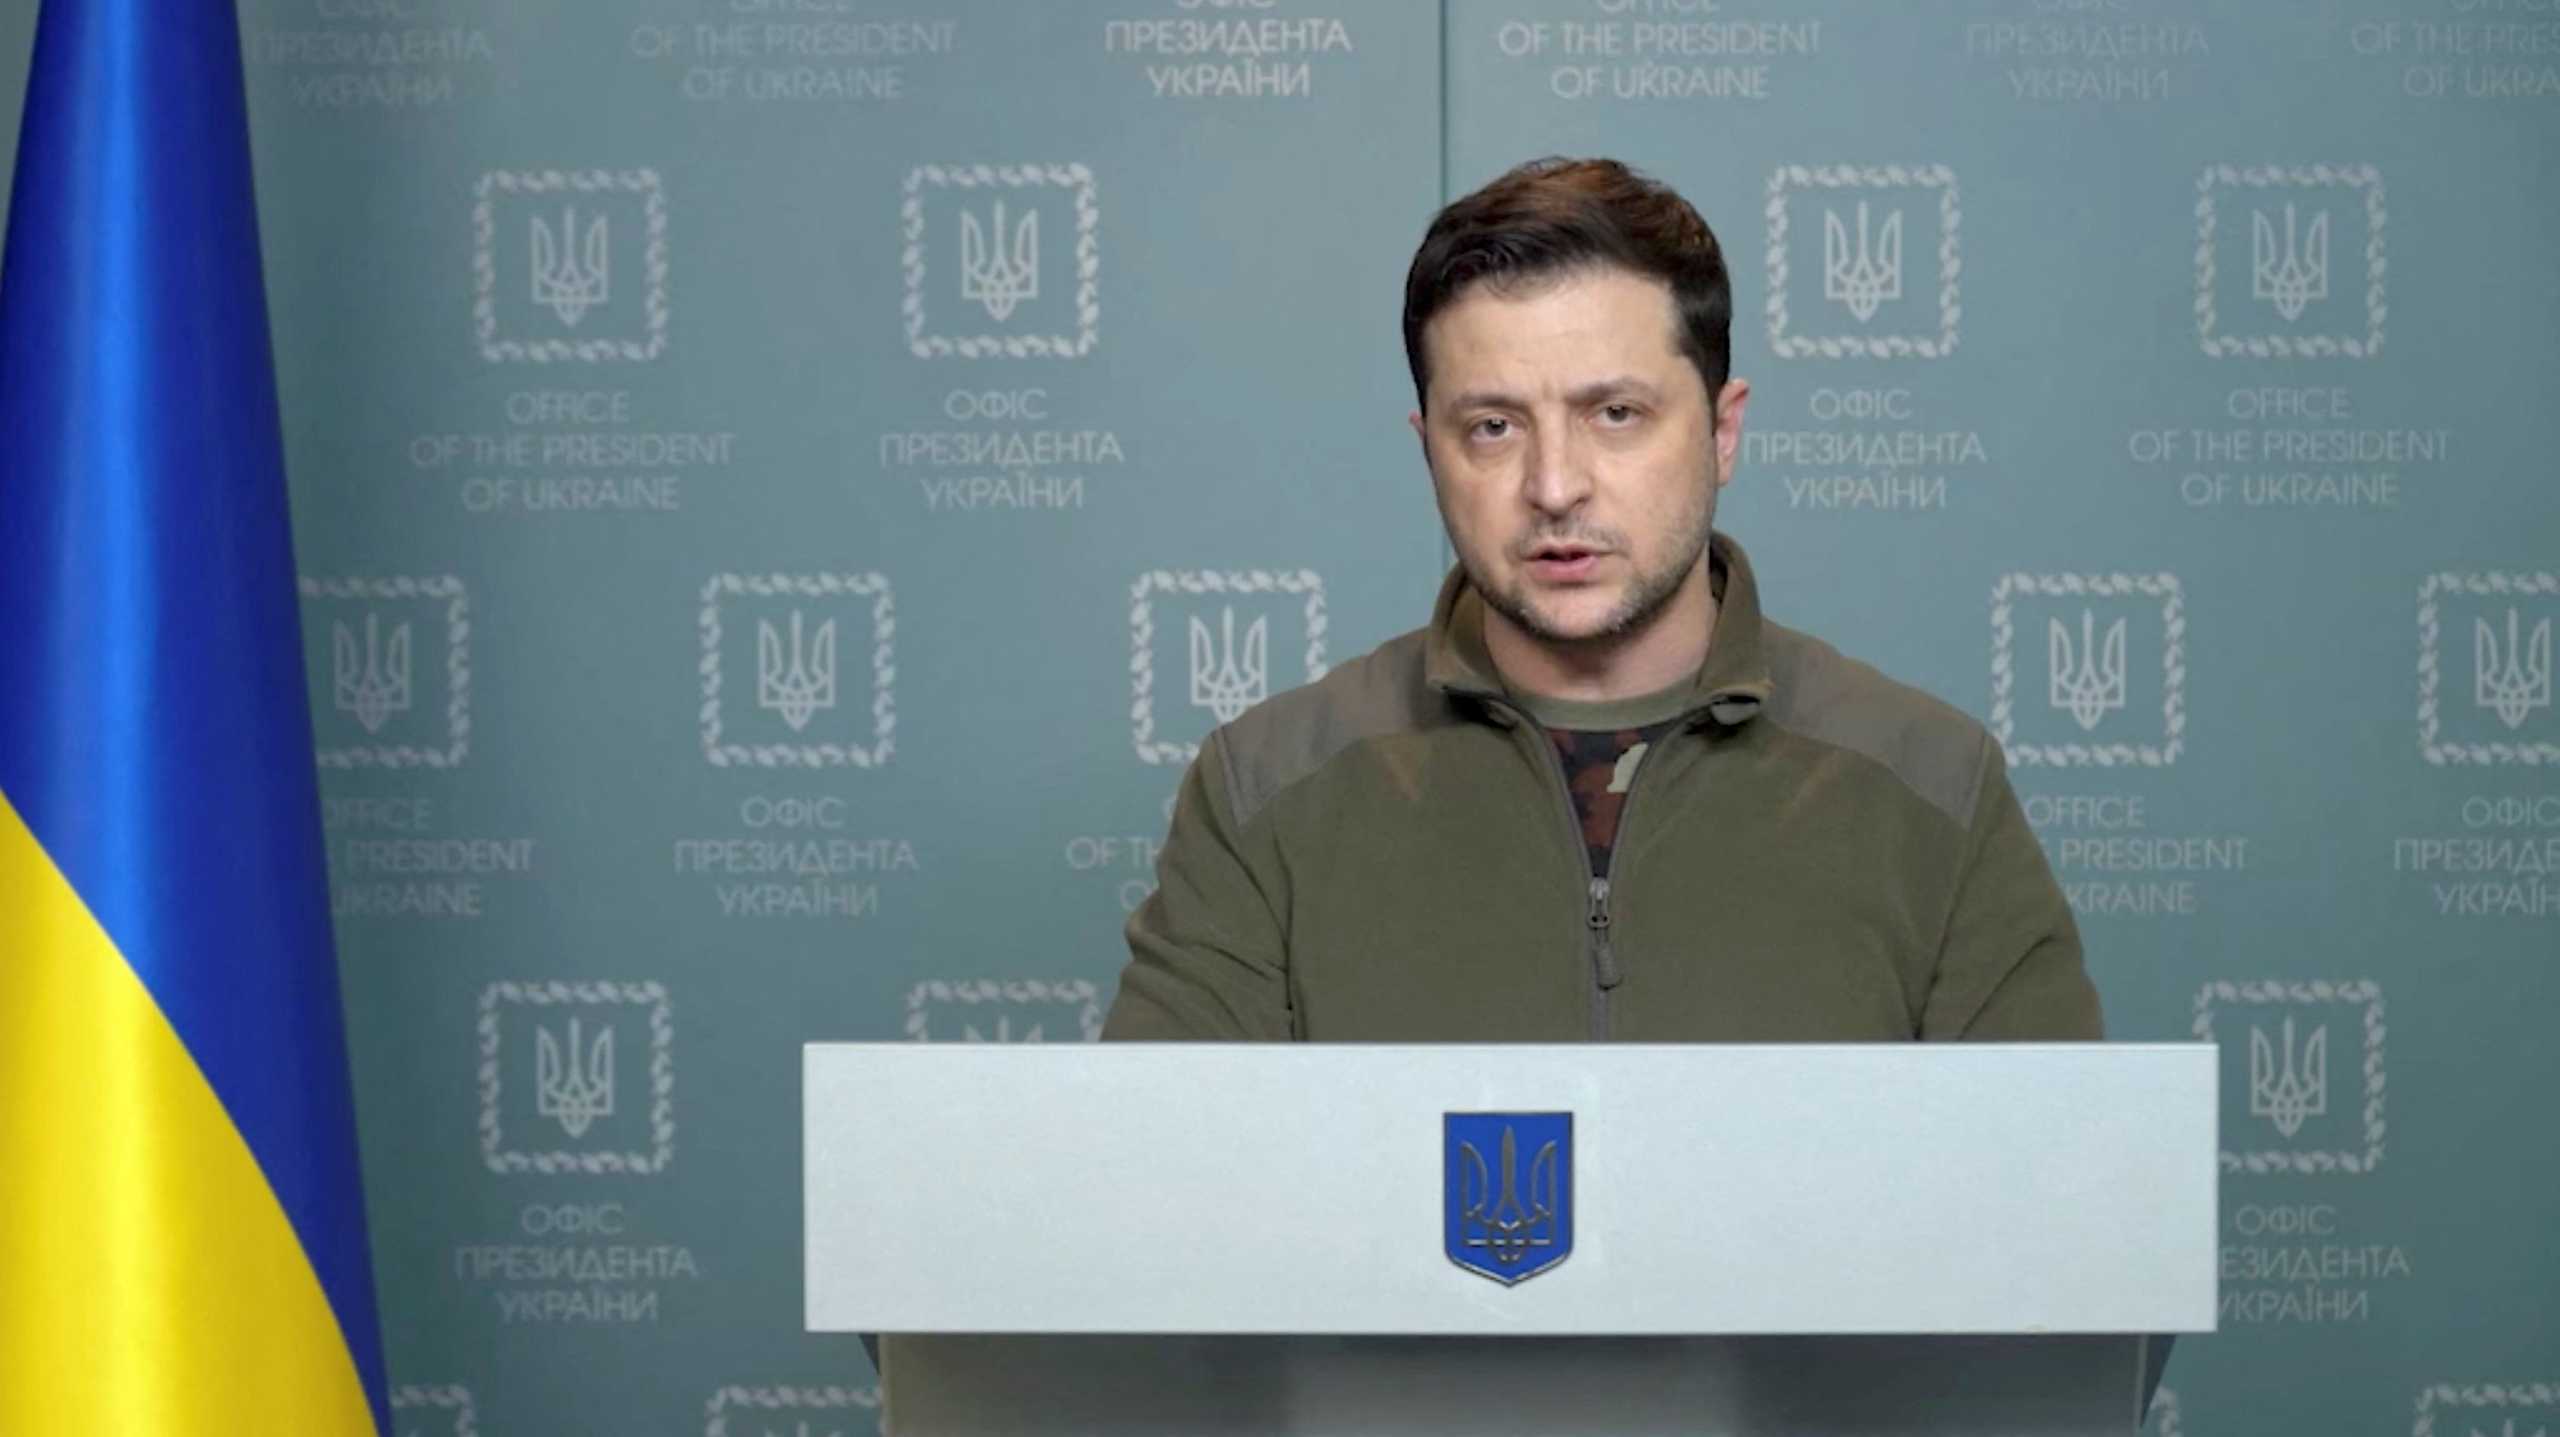 Πόλεμος στην Ουκρανία: Ο Ζελένσκι ζητά άμεση ένταξη στην Ευρωπαϊκή Ένωση με “ειδική διαδικασία”